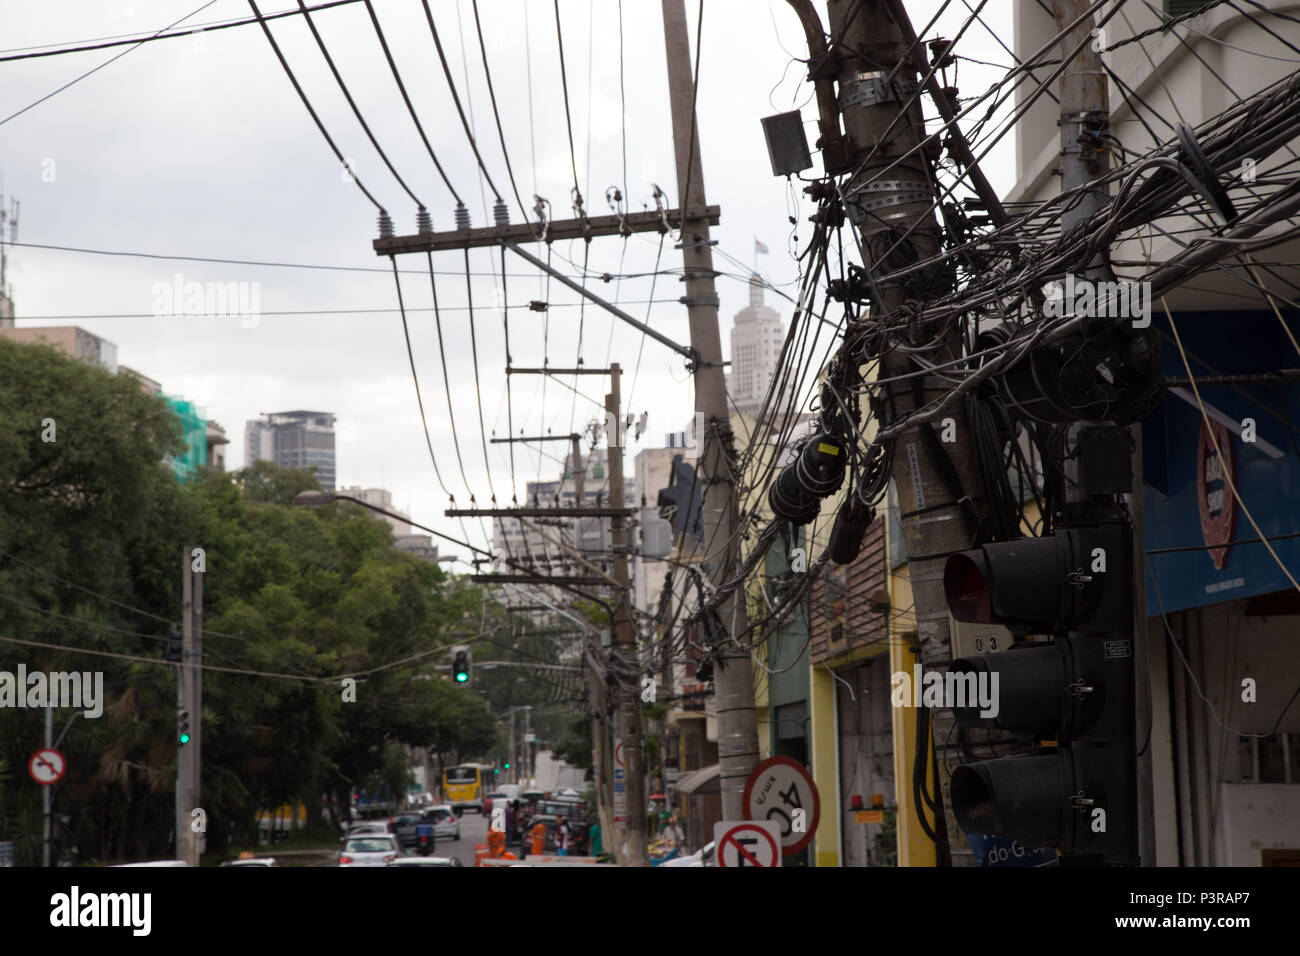 SÃO PAULO, SP - 24.02.2015: ILUMINAÇÃO PÚBLICA - Emaranhado de fios e cabos em postes de iluminação pública em São Paulo. (Foto: Luis Blanco / Fotoarena) Stock Photo